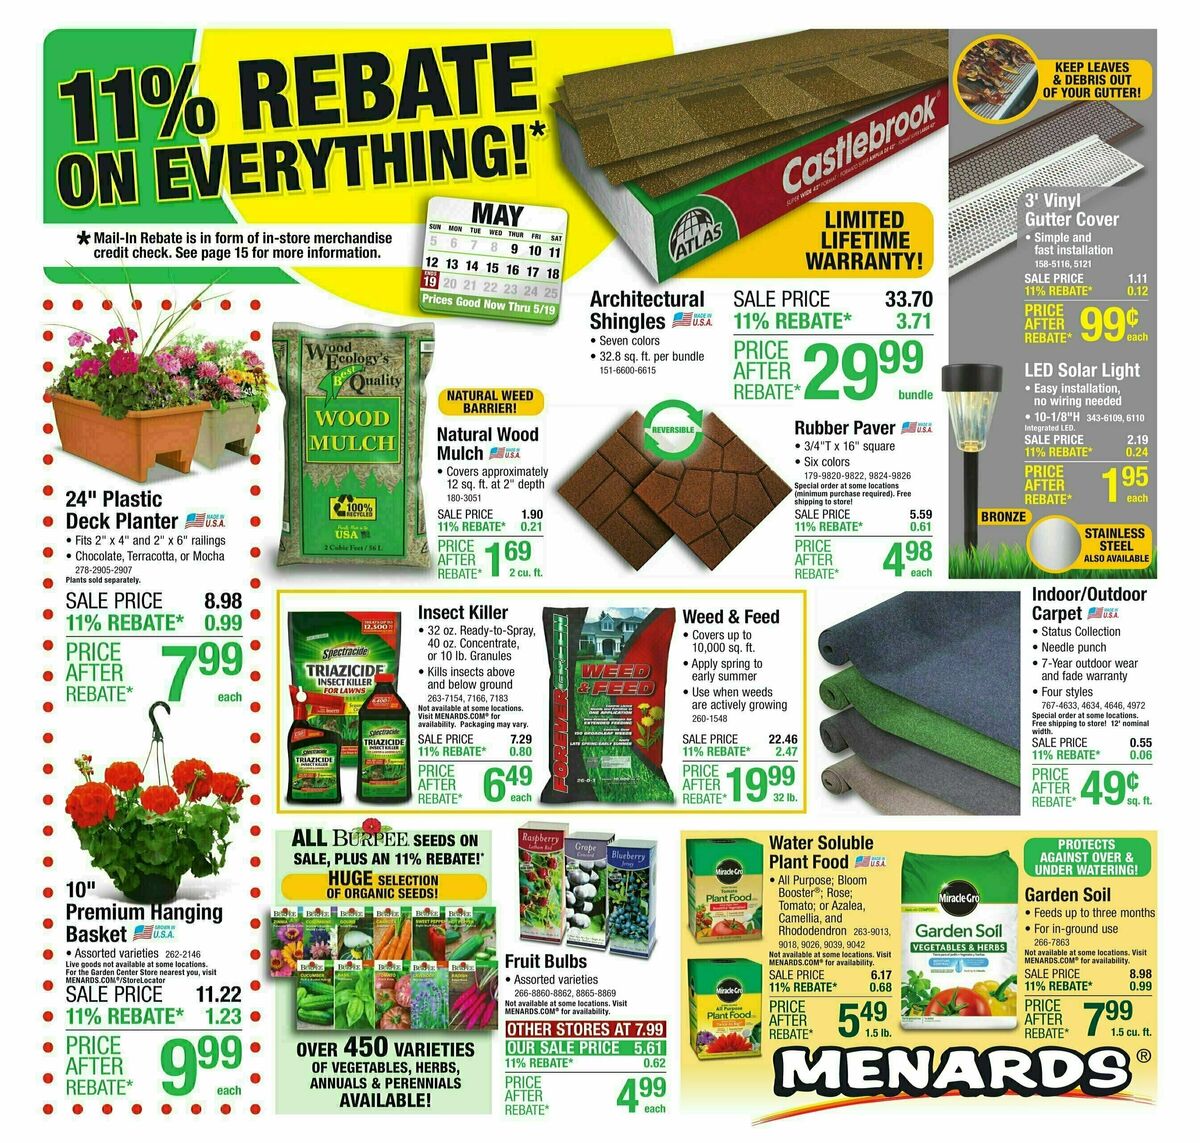 Menards 11% Rebate Sale Weekly Ad from May 8